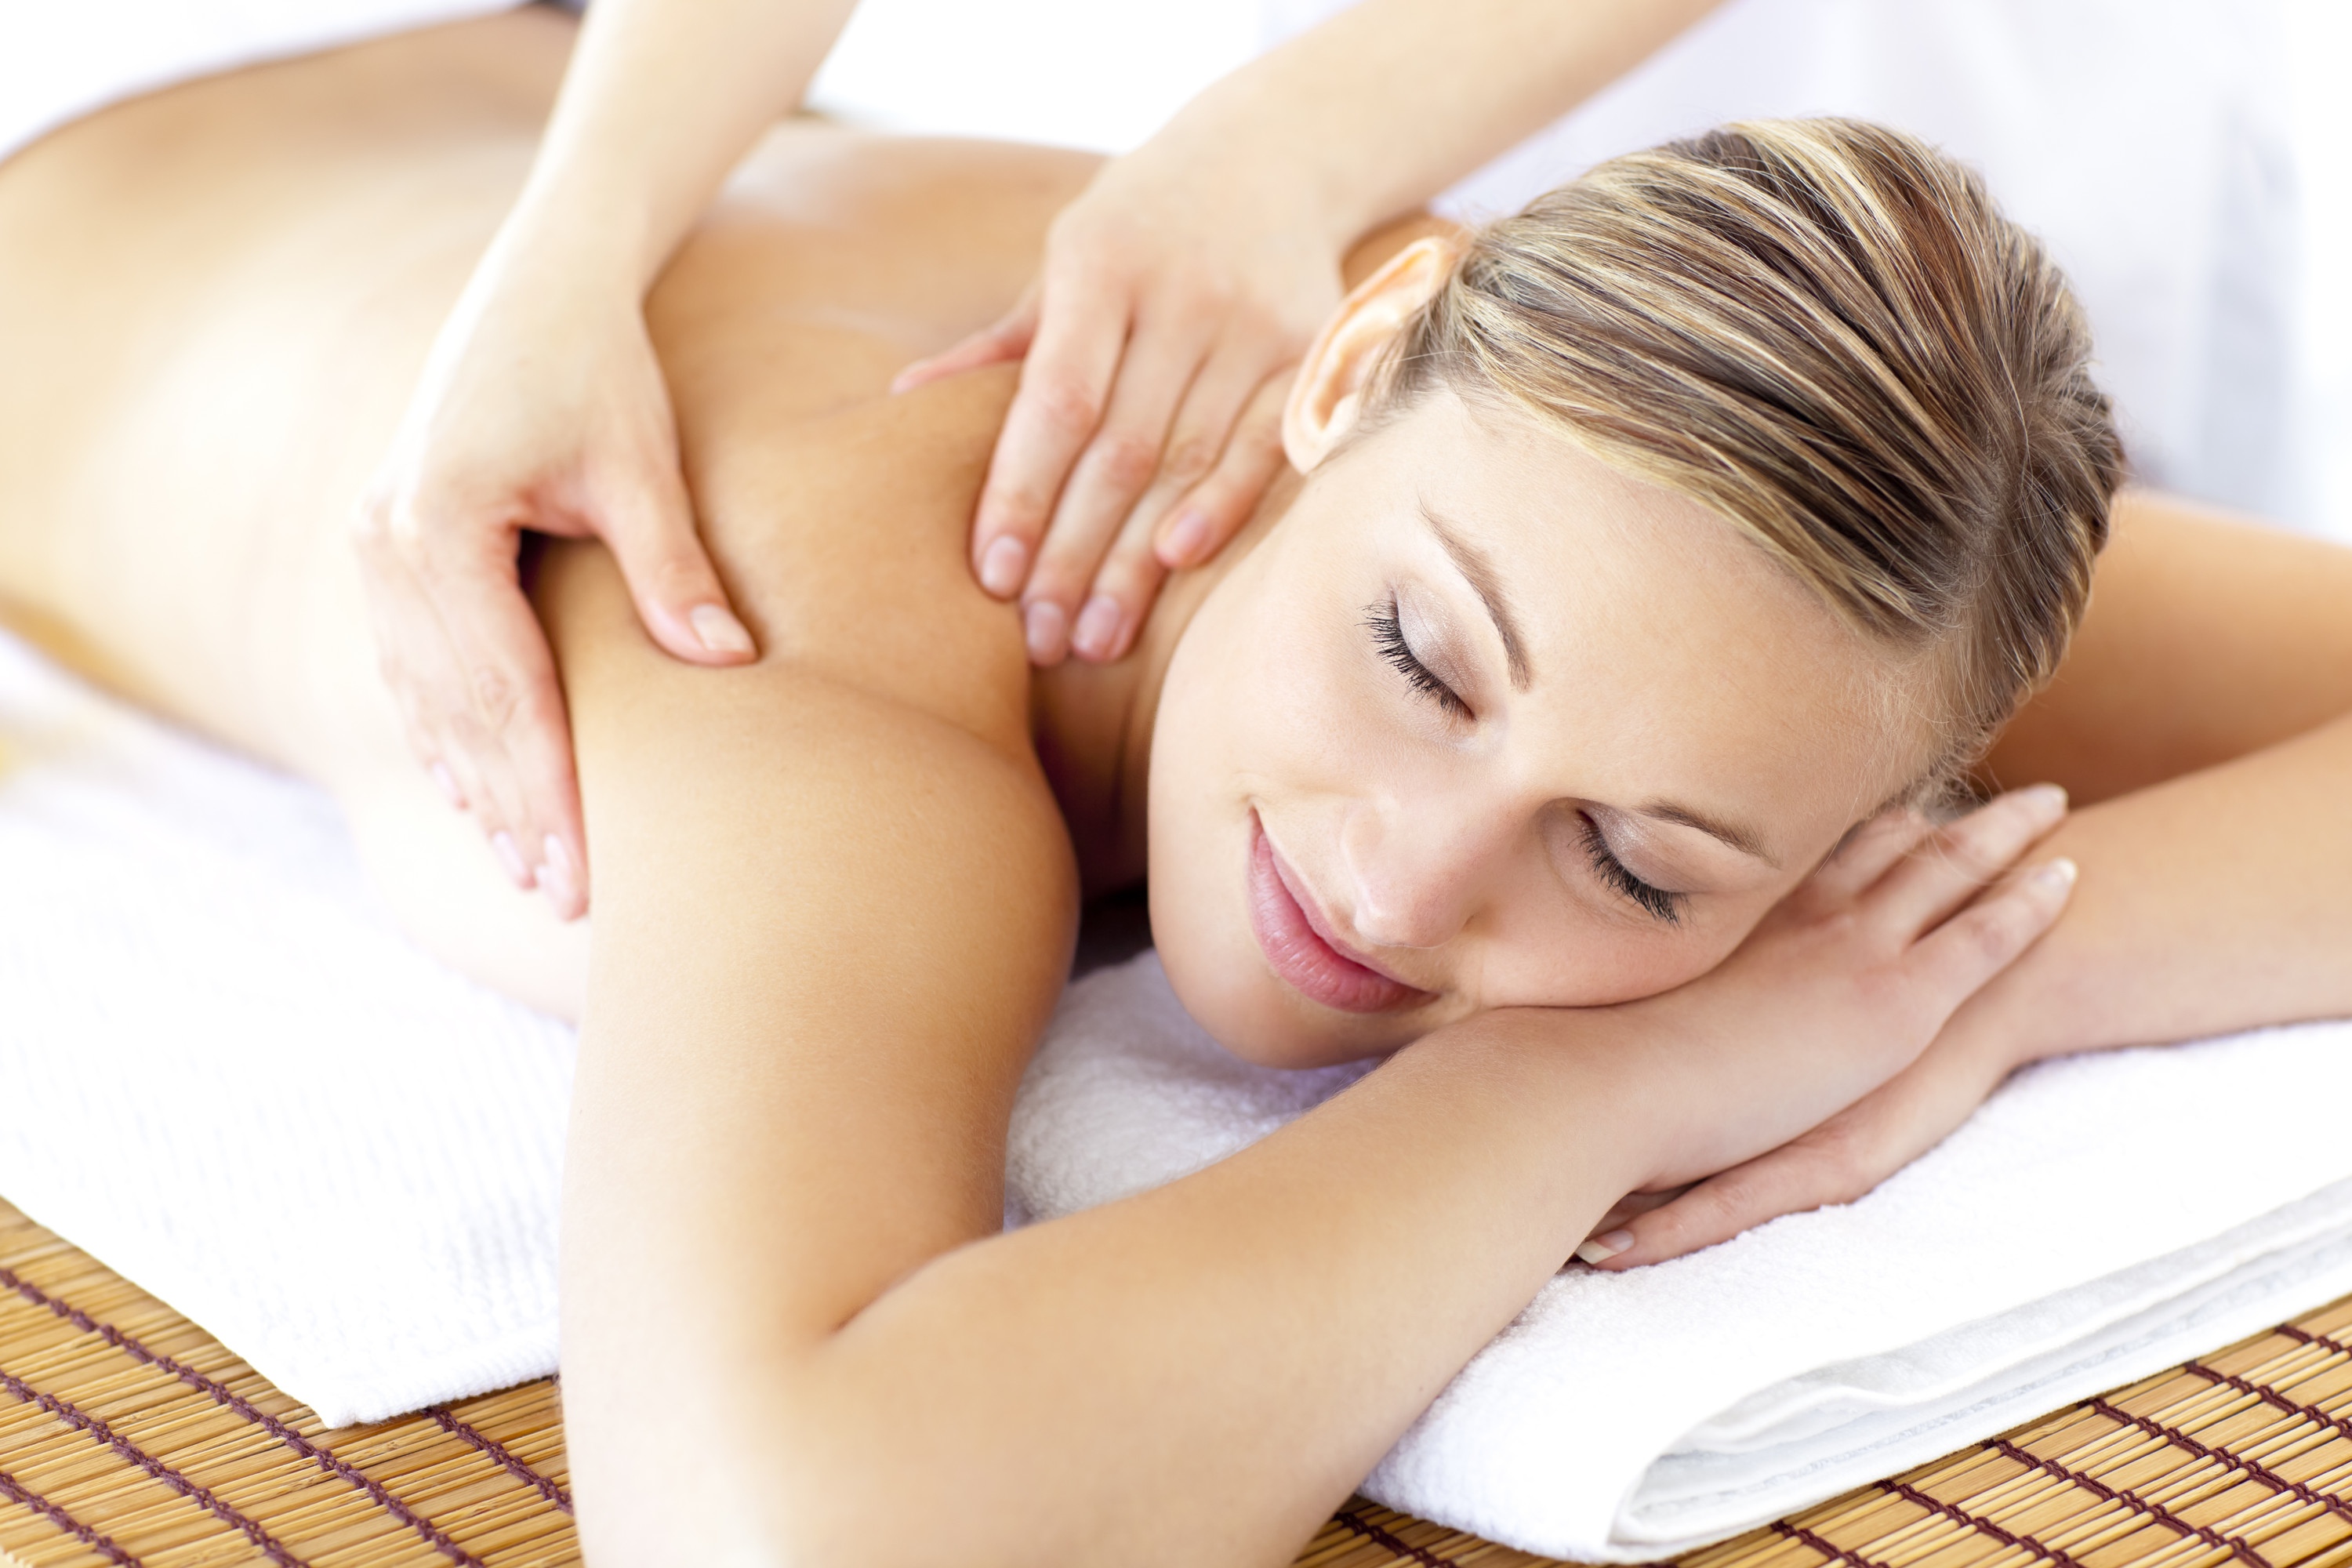 painel-adesivo-para-spa-massagem-clinica-de-spa-14516018.jpg